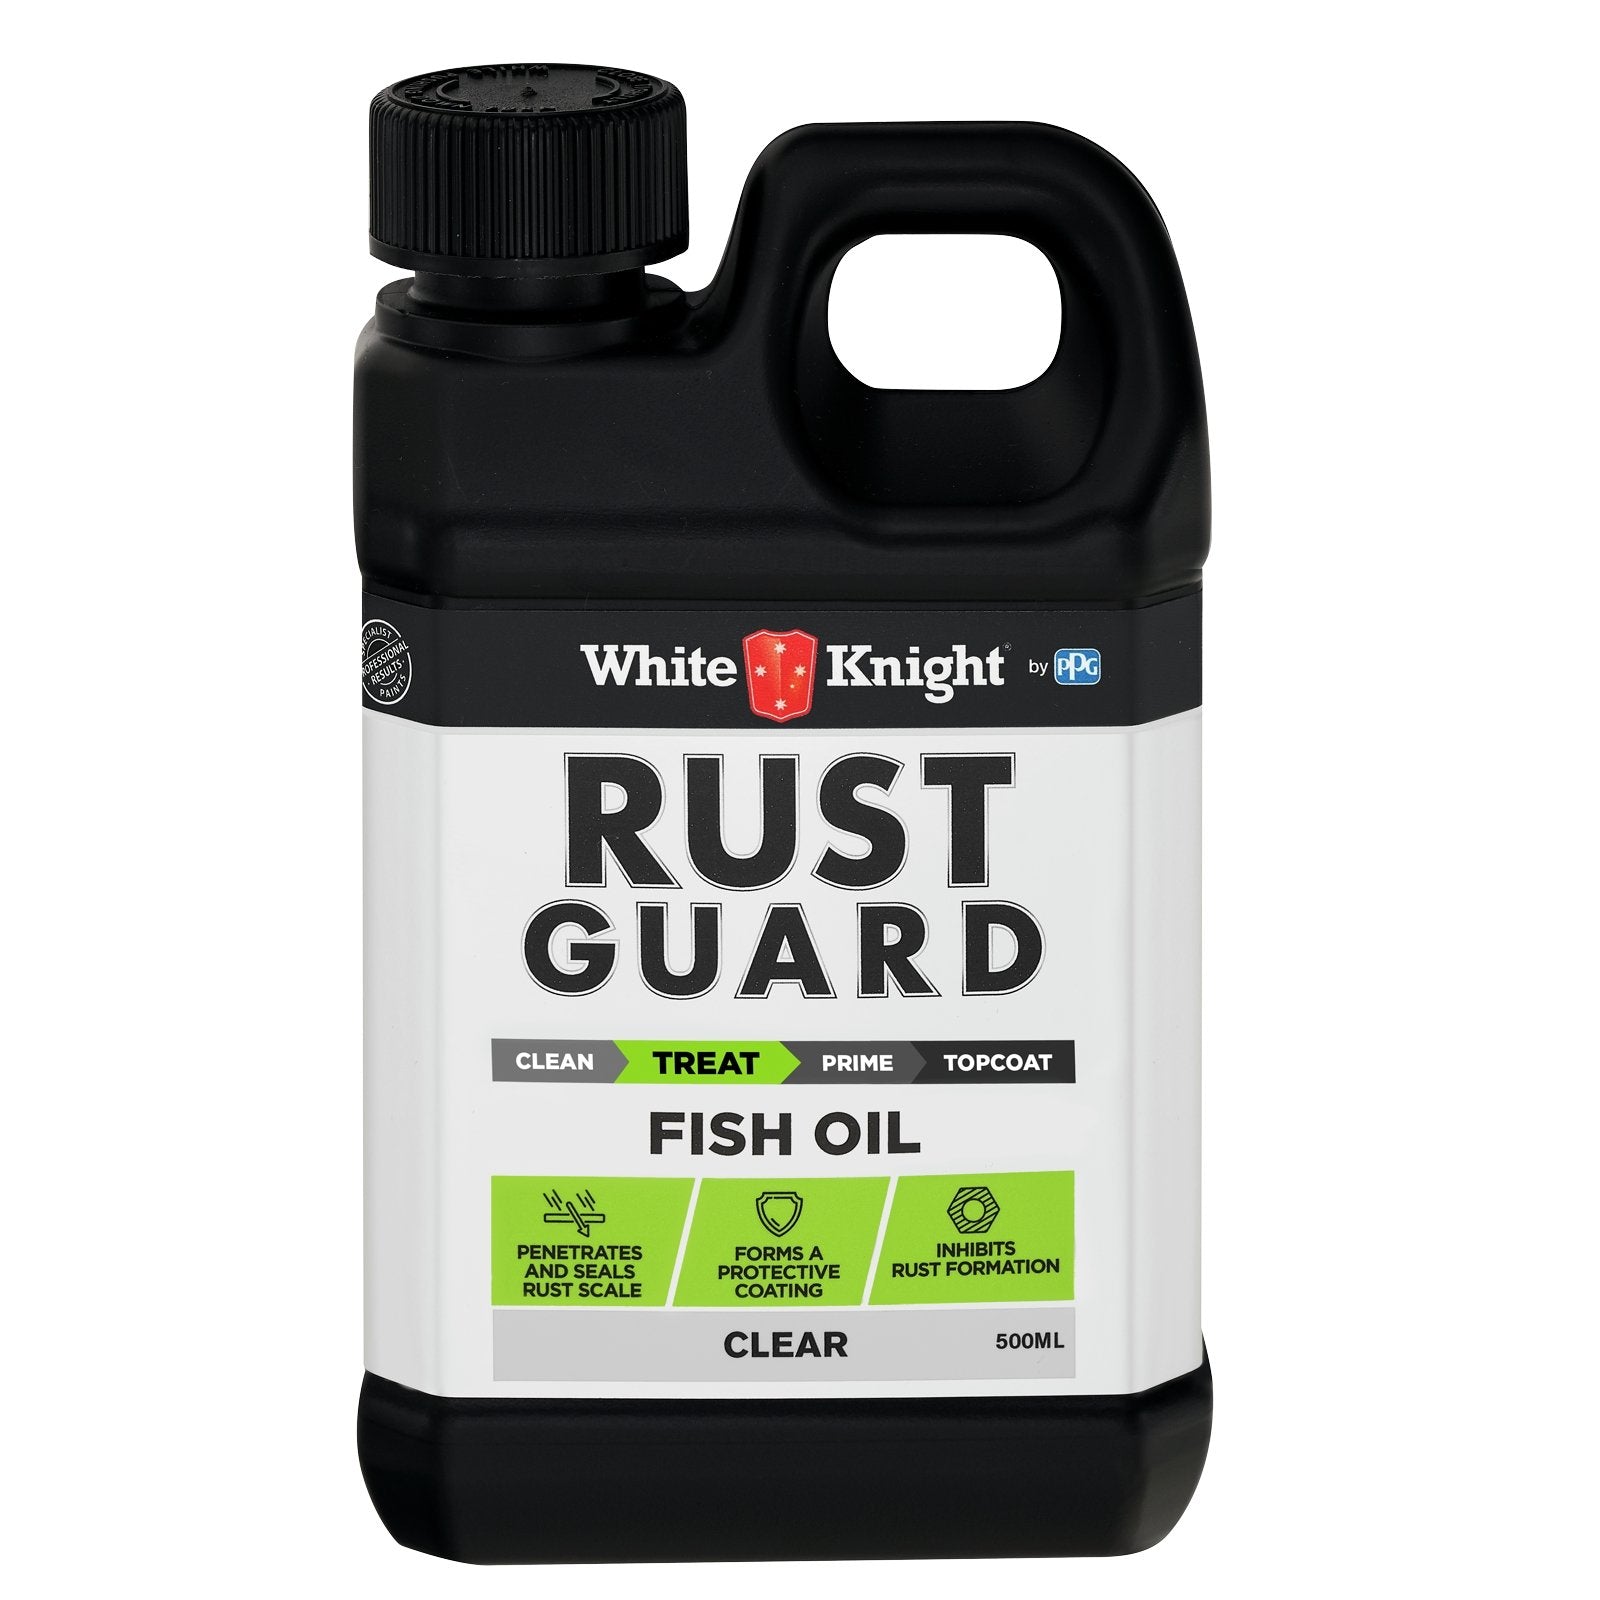 White Knight Rust Guard Fish Oil 0.5L 375473/500ML - Double Bay Hardware